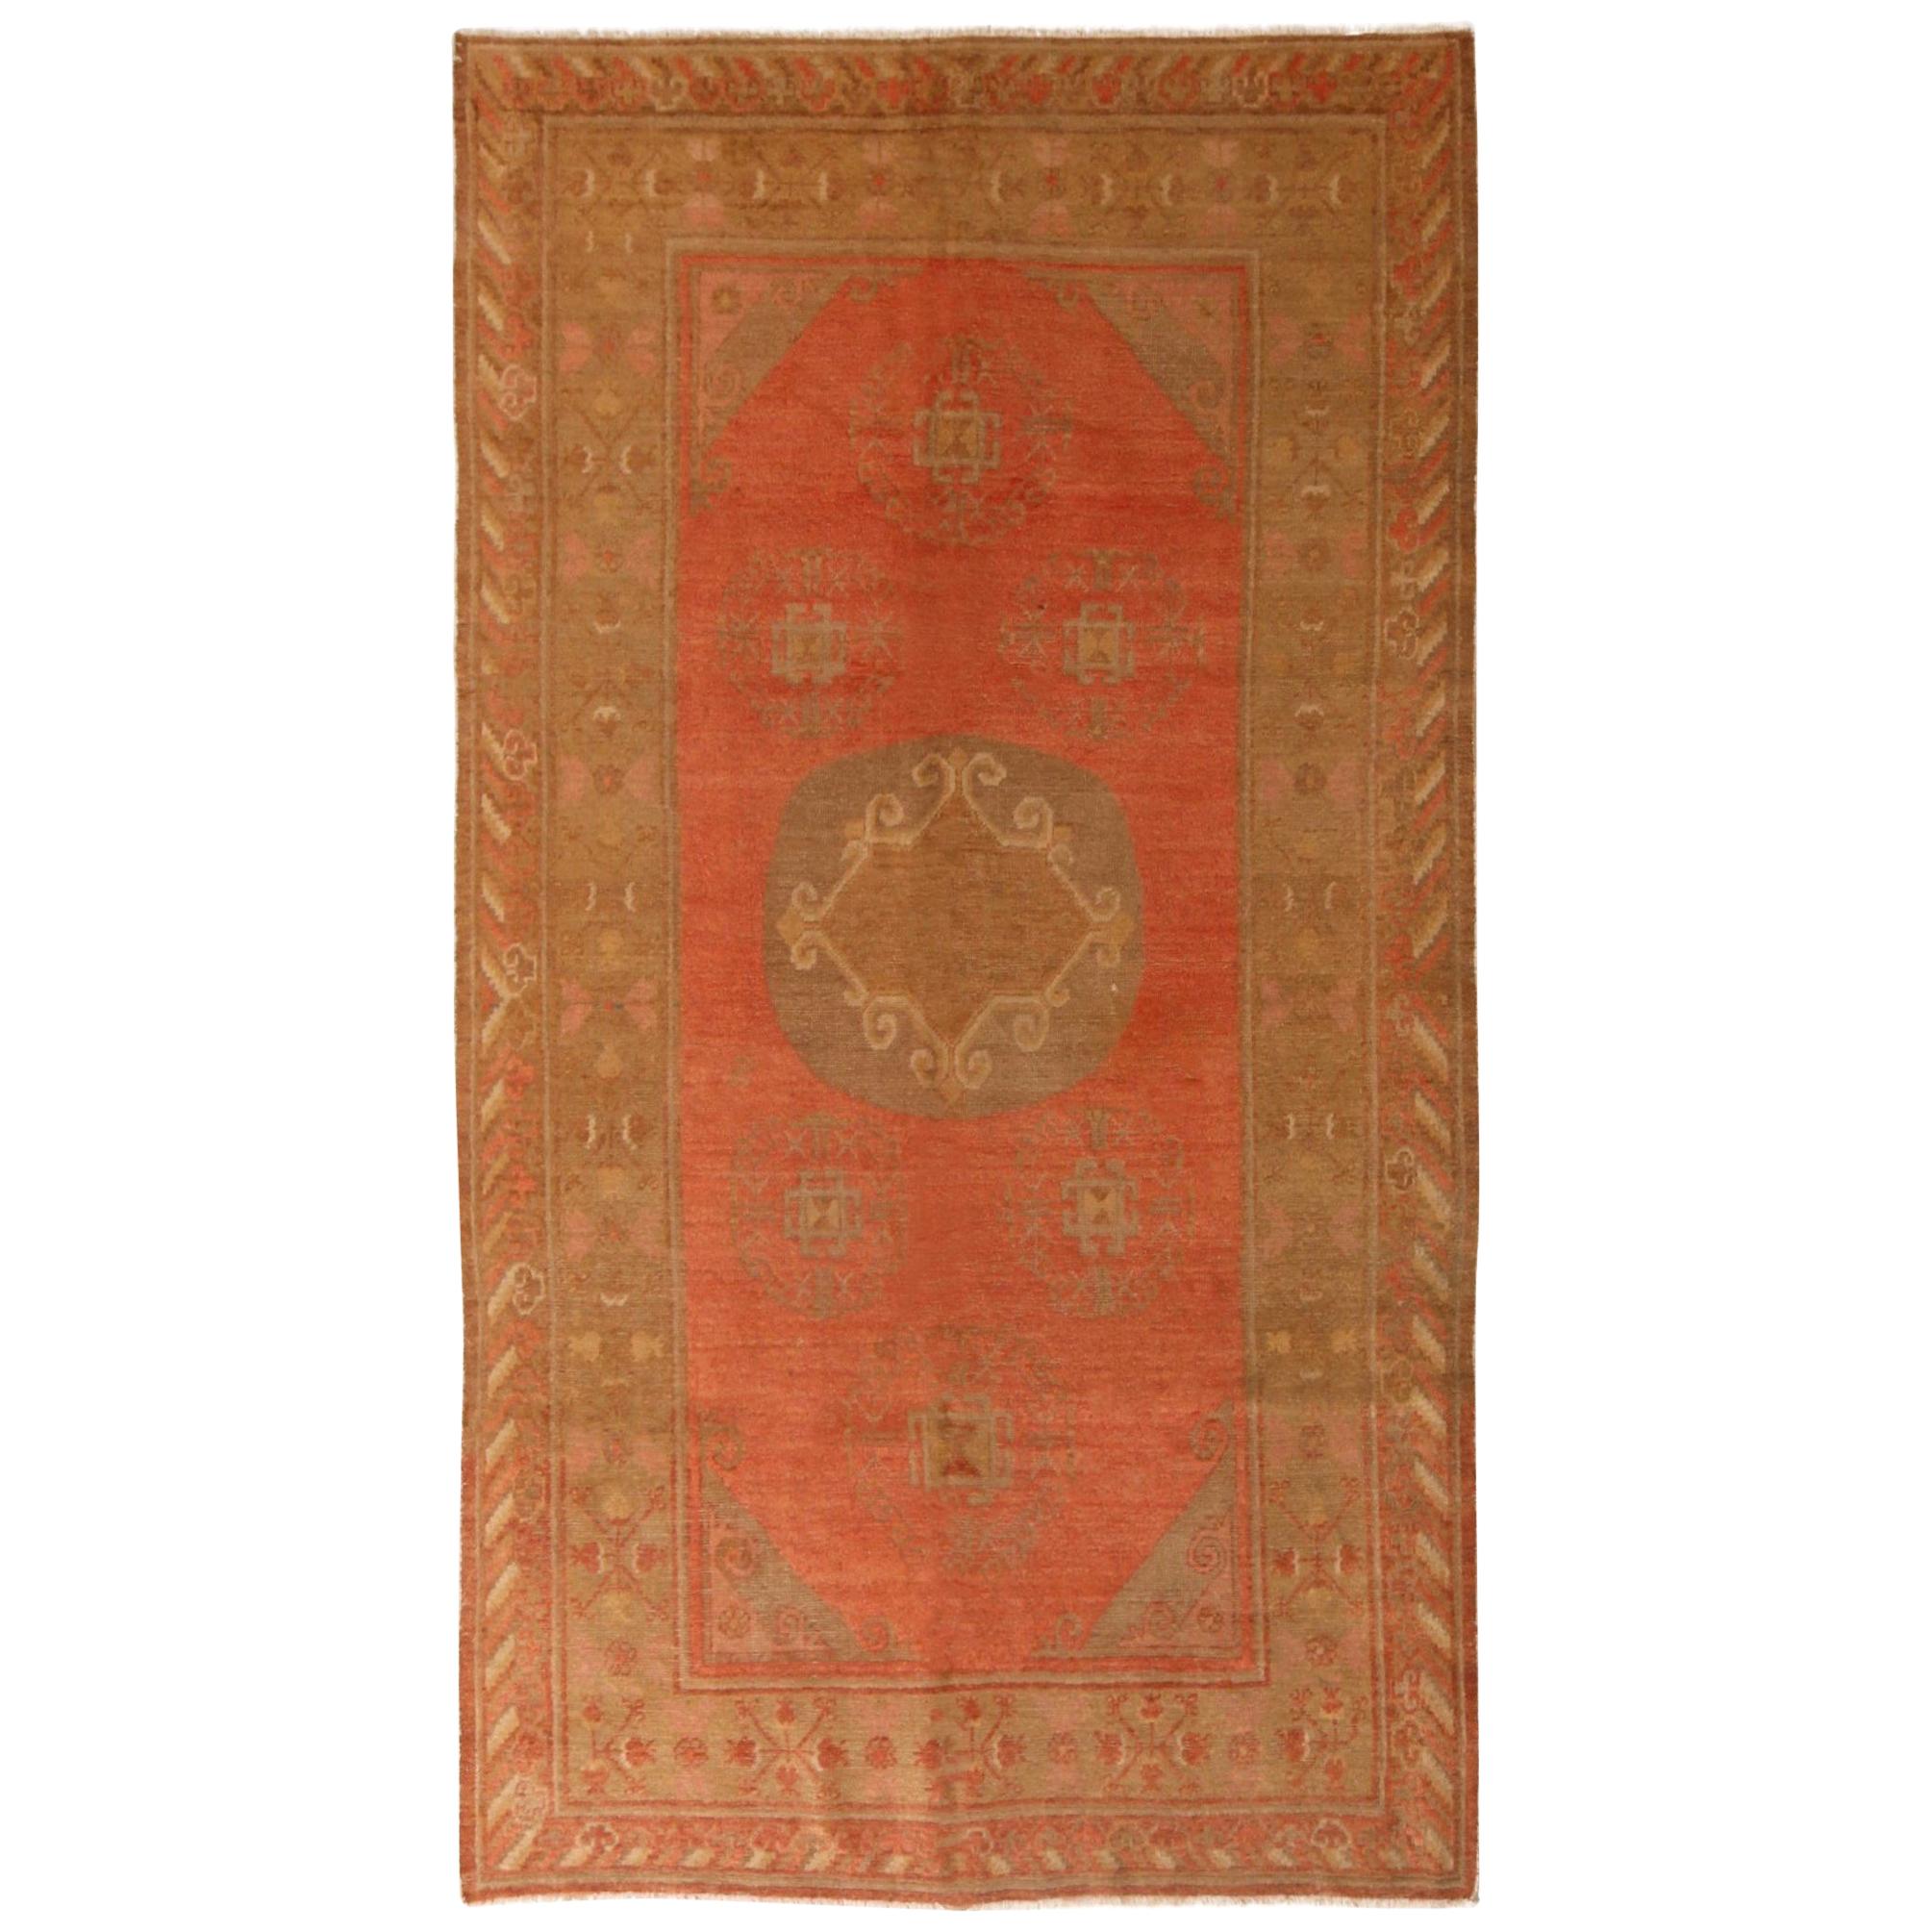 Tapis Khotan ancien transitionnel en laine rose et brun clair avec médaillon par Rug & Kilim